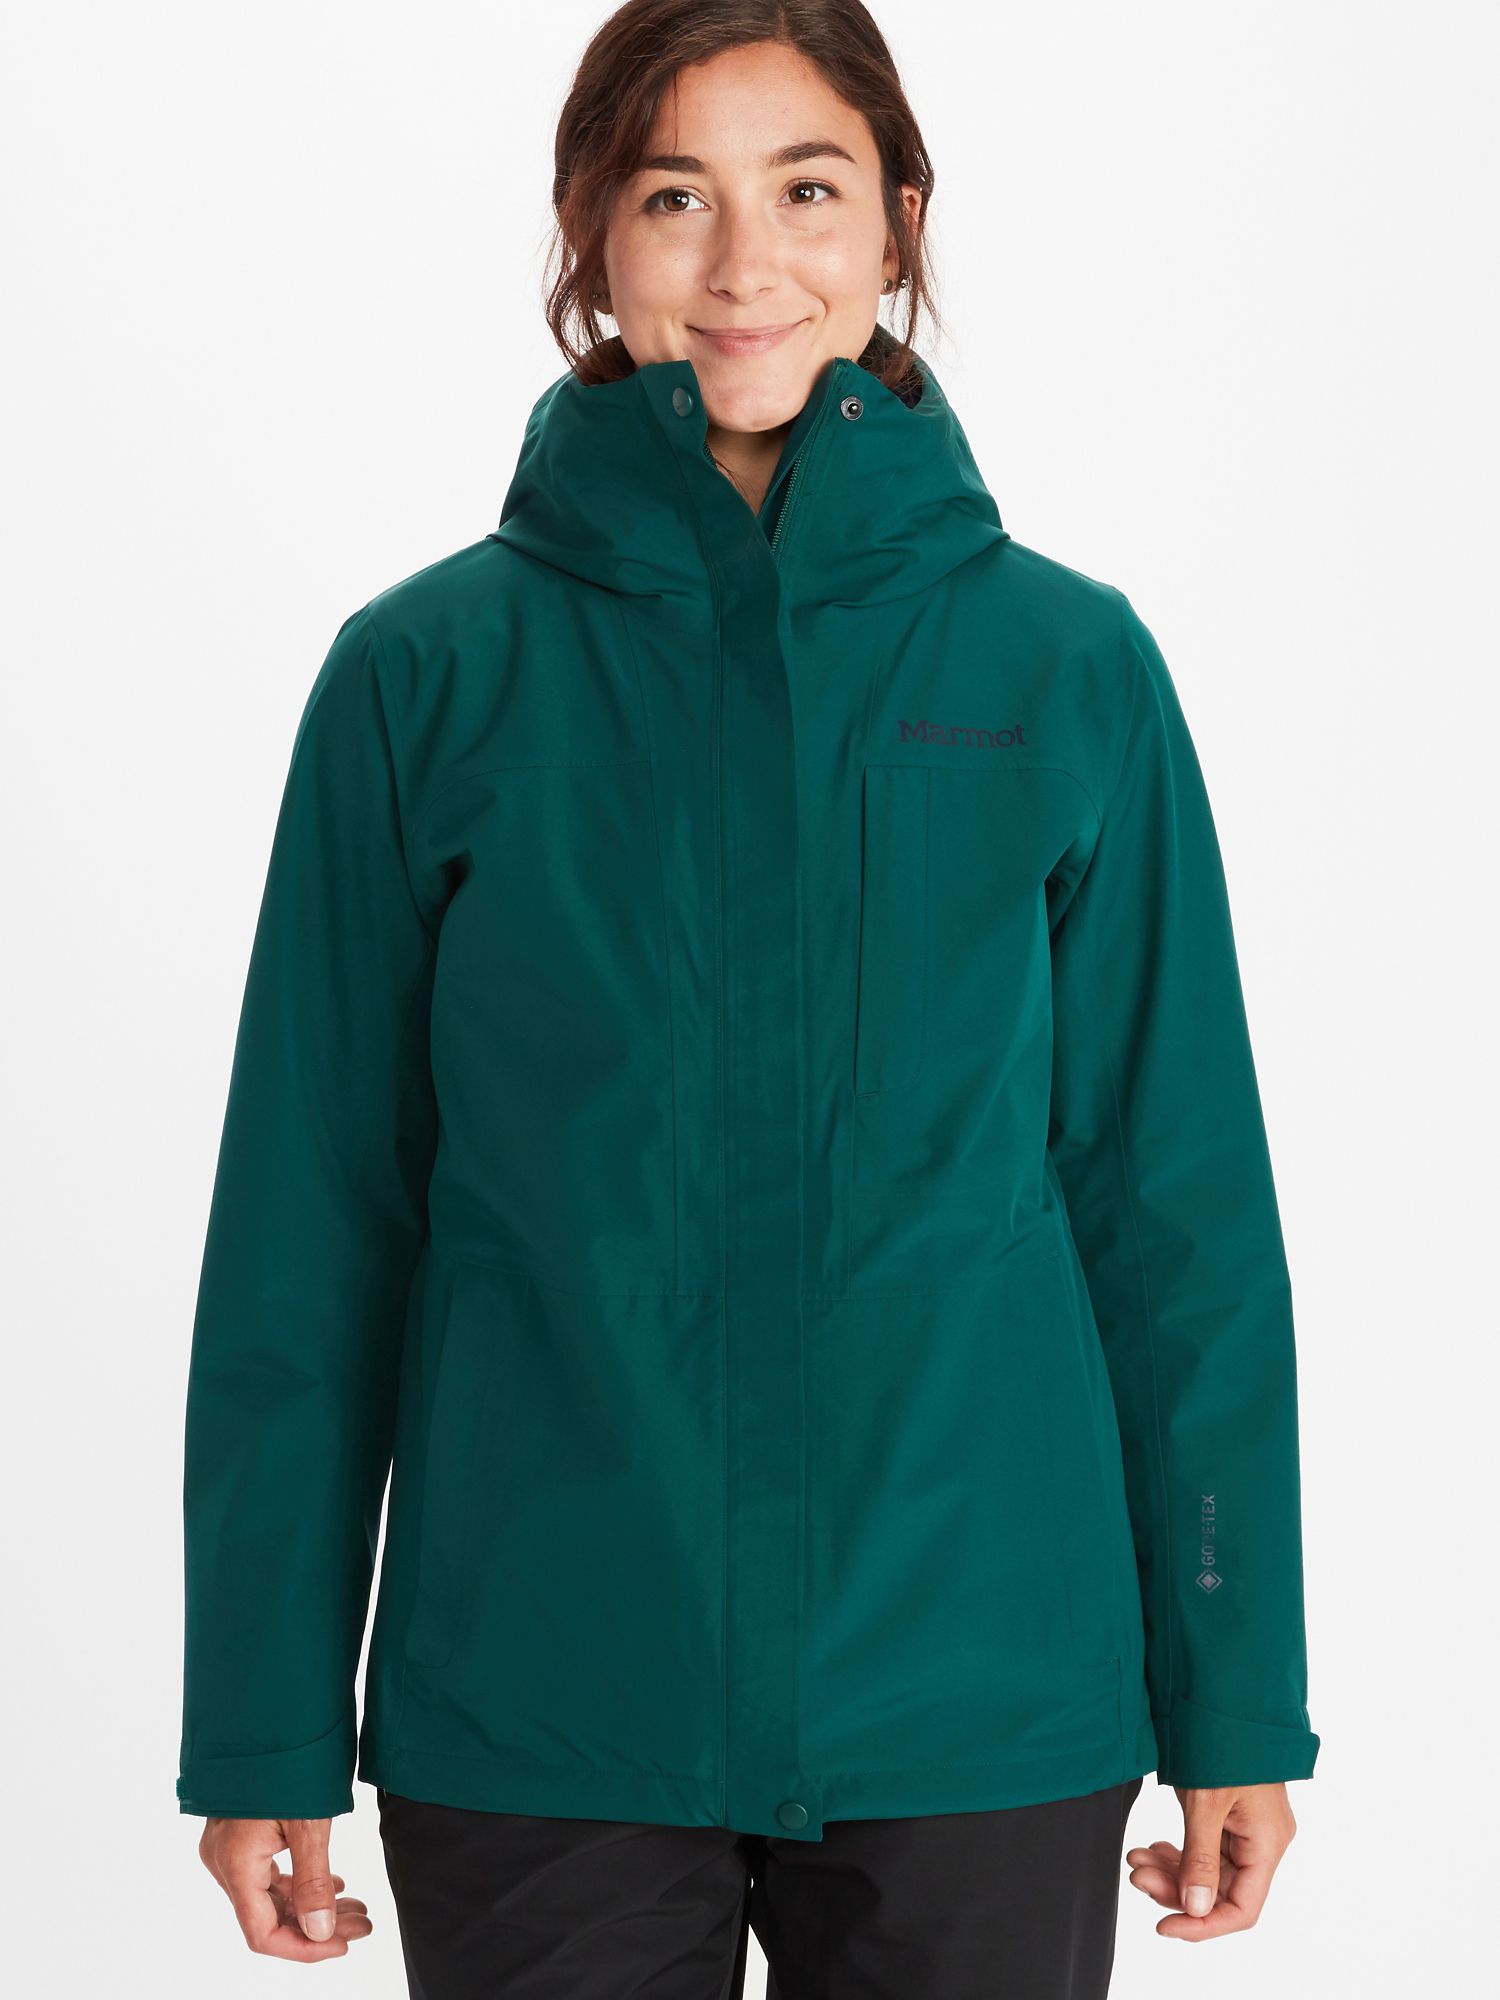 marmot triclimate jacket